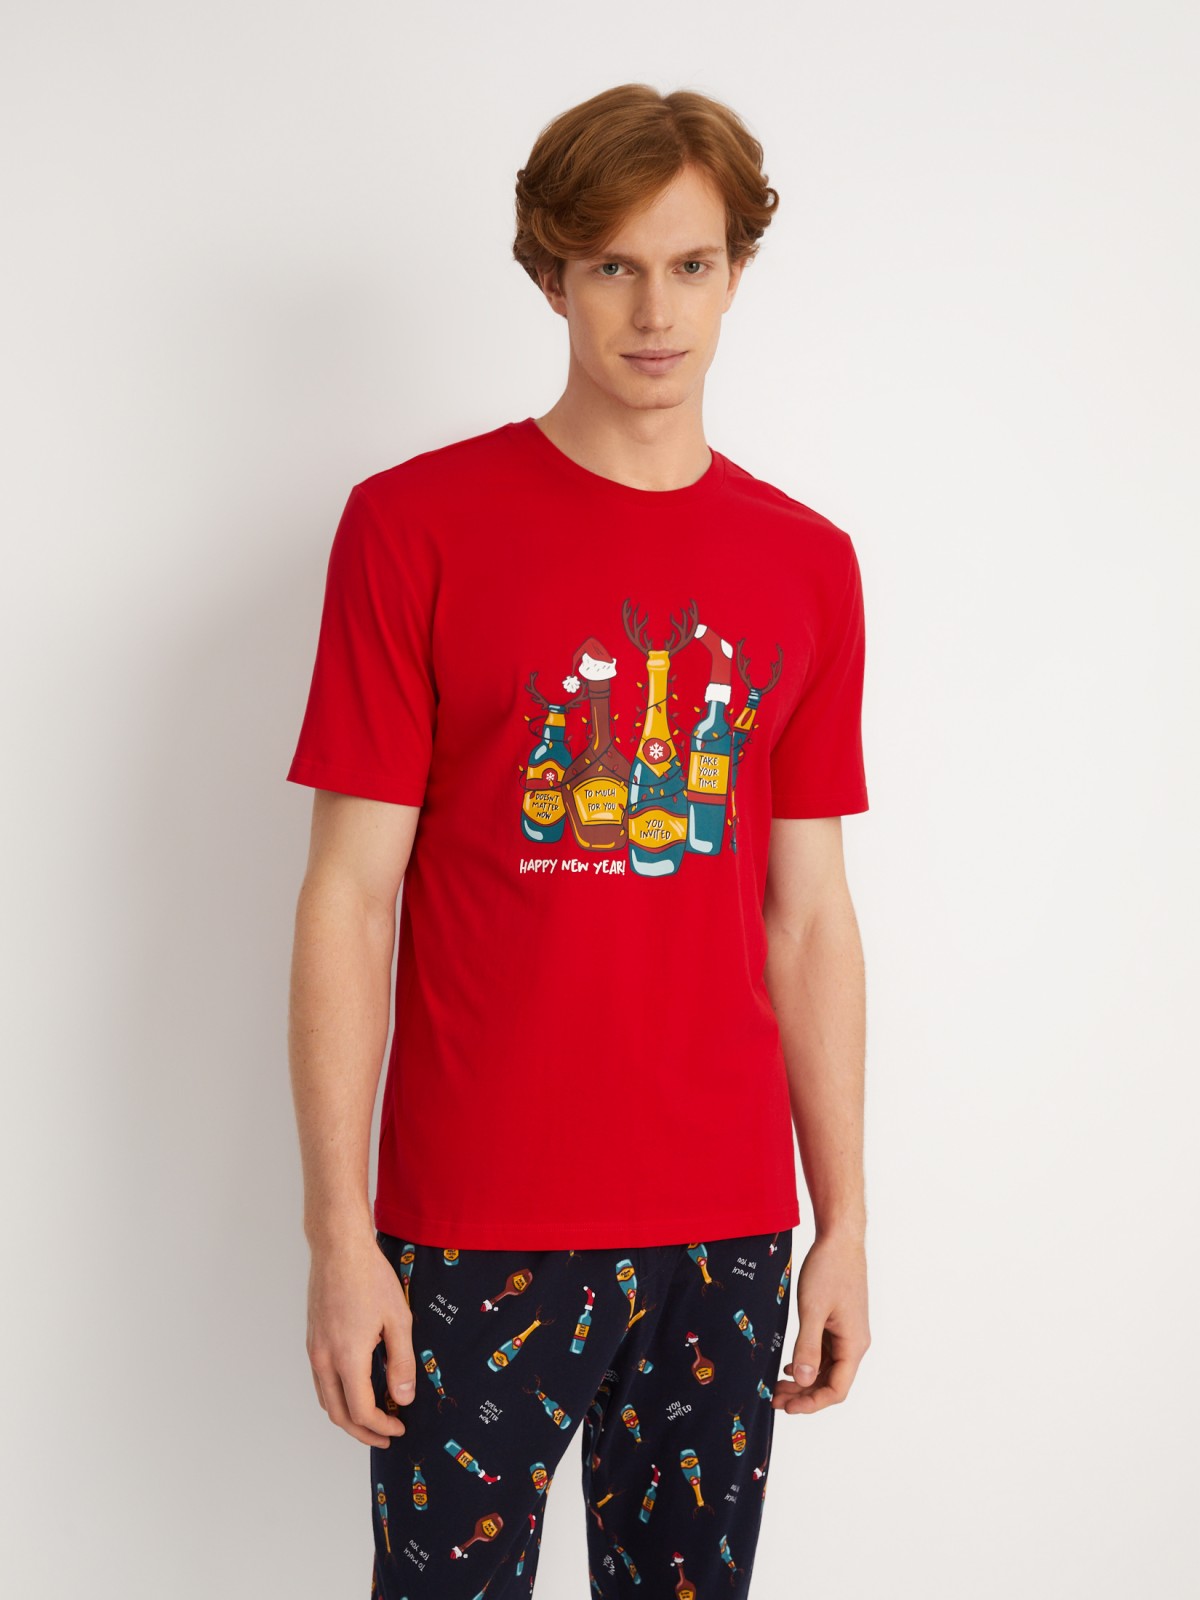 Домашний пижамный комплект новогодний (футболка и штаны) zolla 613458759051, цвет красный, размер S - фото 1